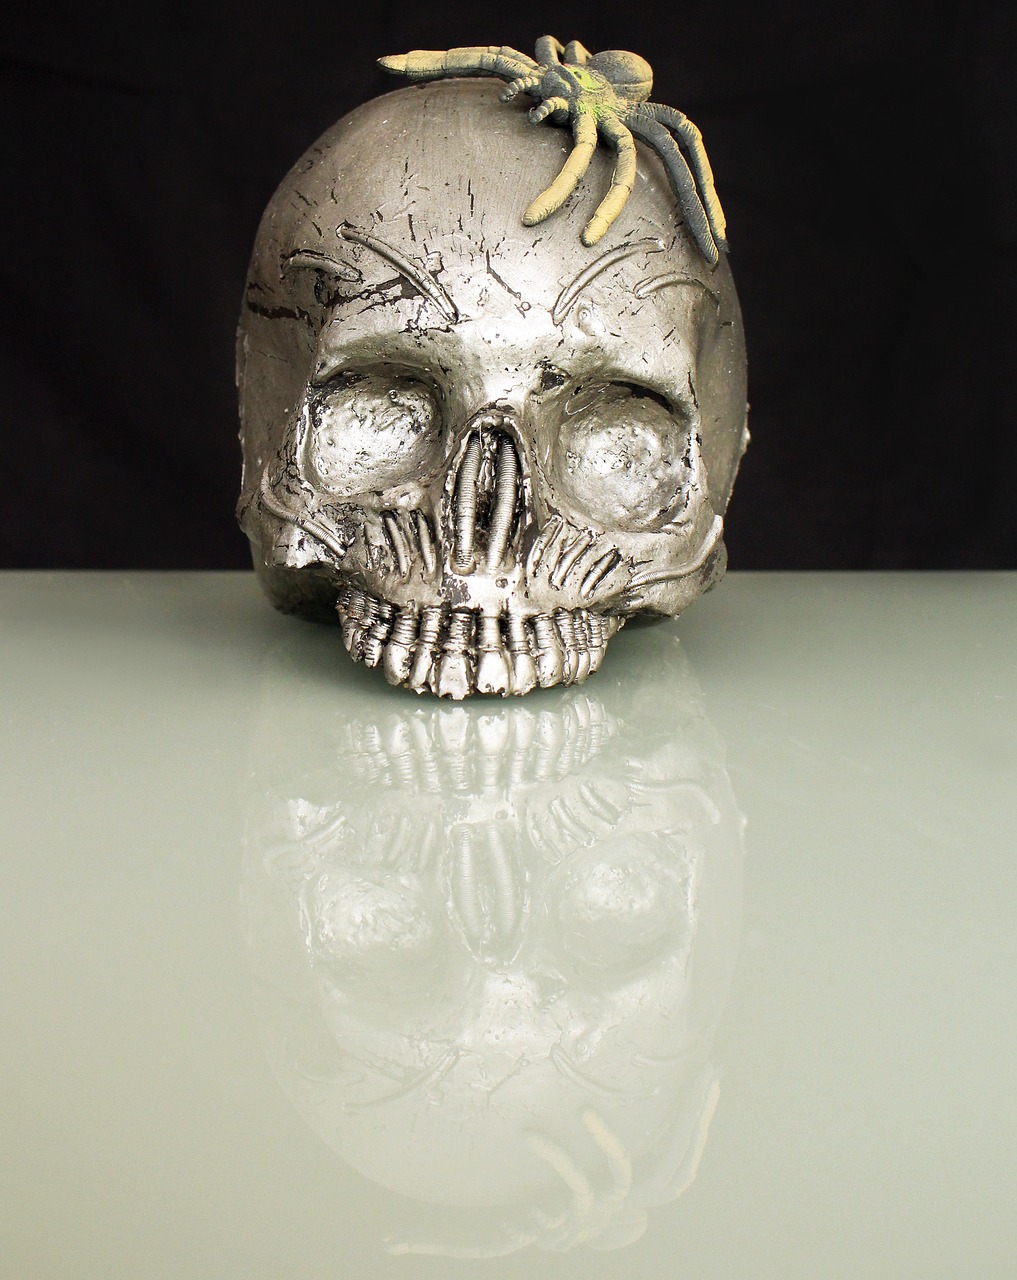 spider skull and crossbones skull free photo